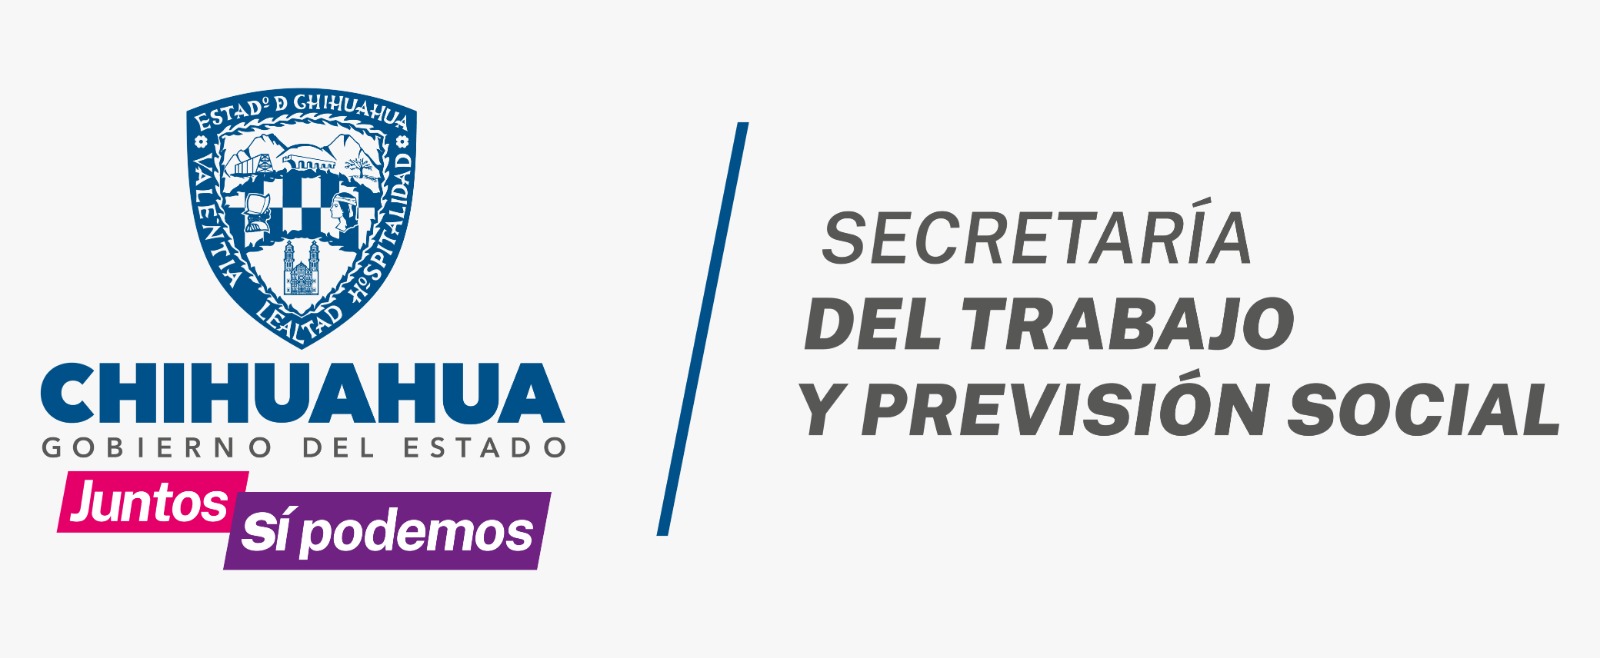 Secretaría del Trabajo y Prevensión Social Logo